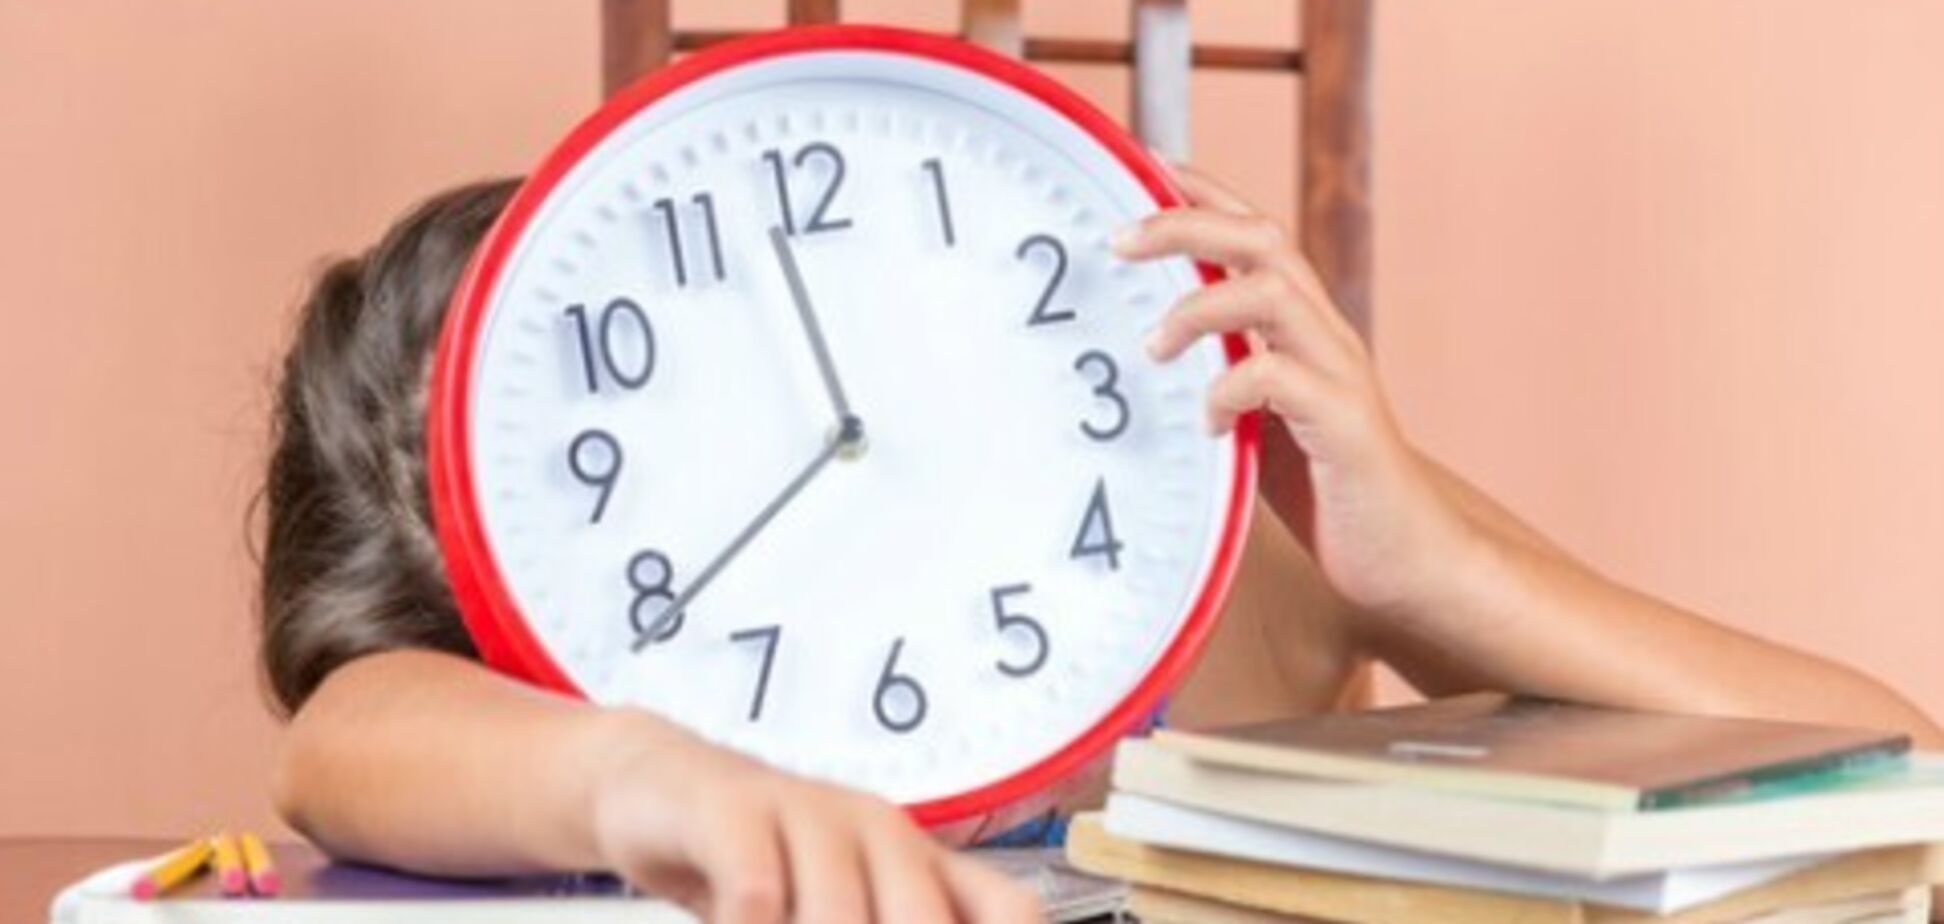 Недостаток сна влияет на успеваемость школьников и студентов – исследование